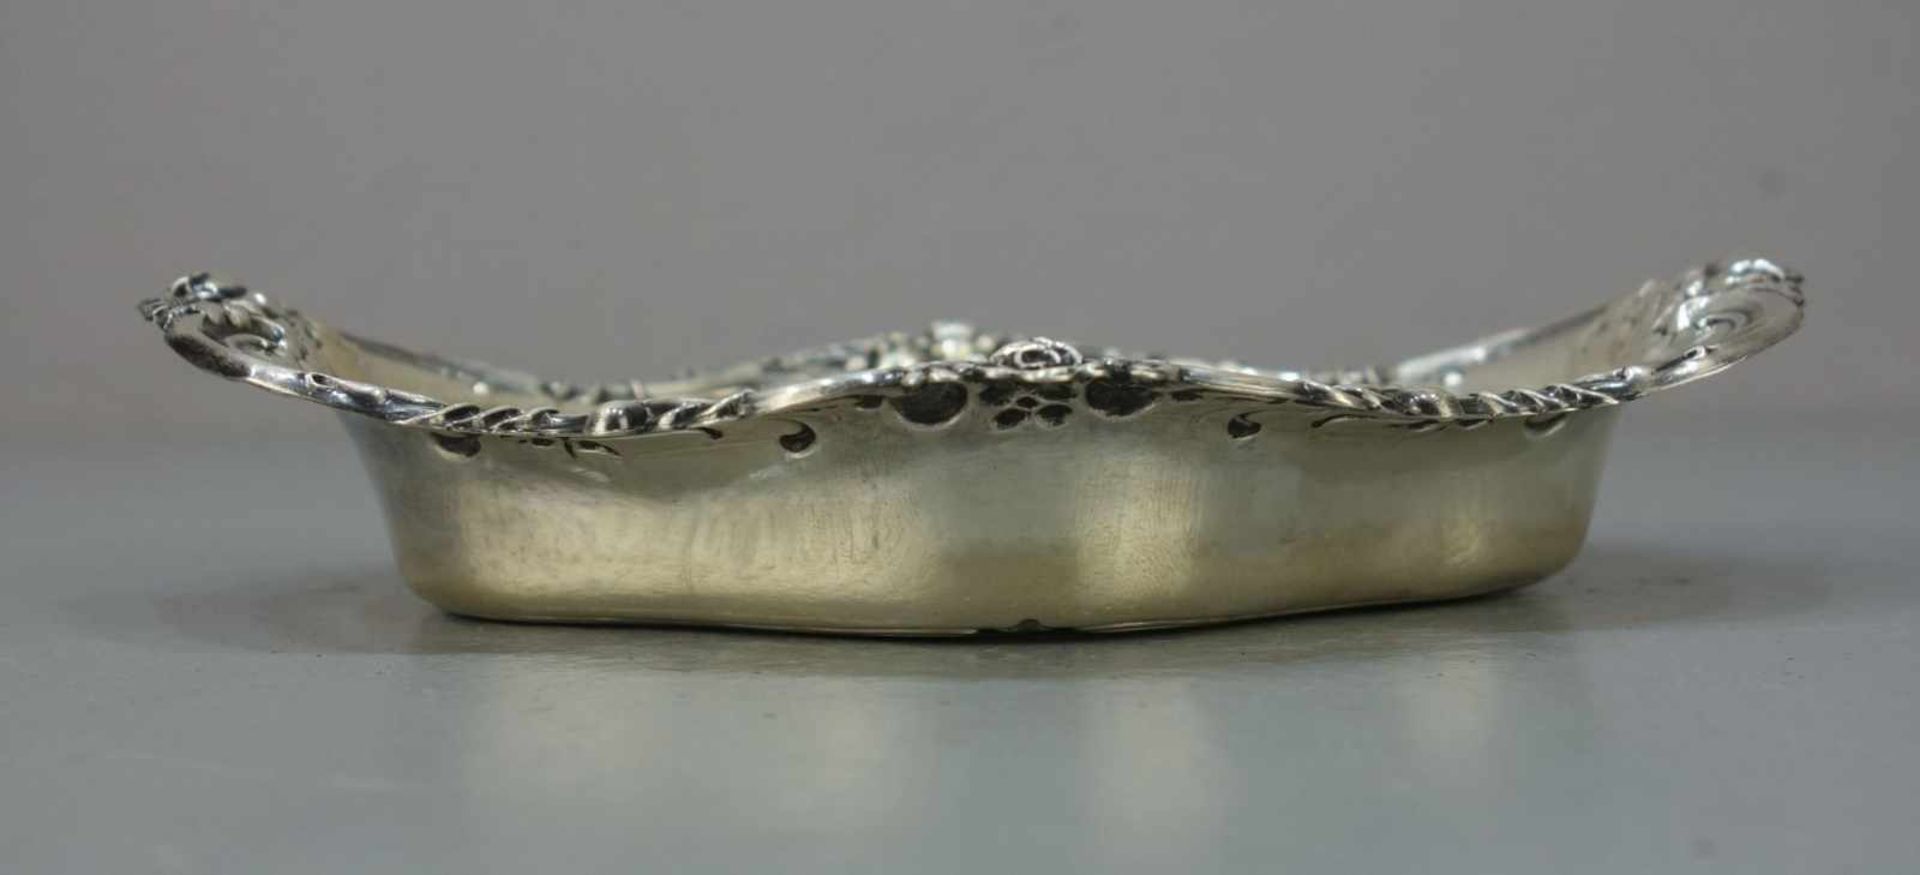 SILBERNE SCHALE / silver bowl, 925er Silber (74 g), bezeichnet "Wallace", "Sterling" und mit - Bild 4 aus 4